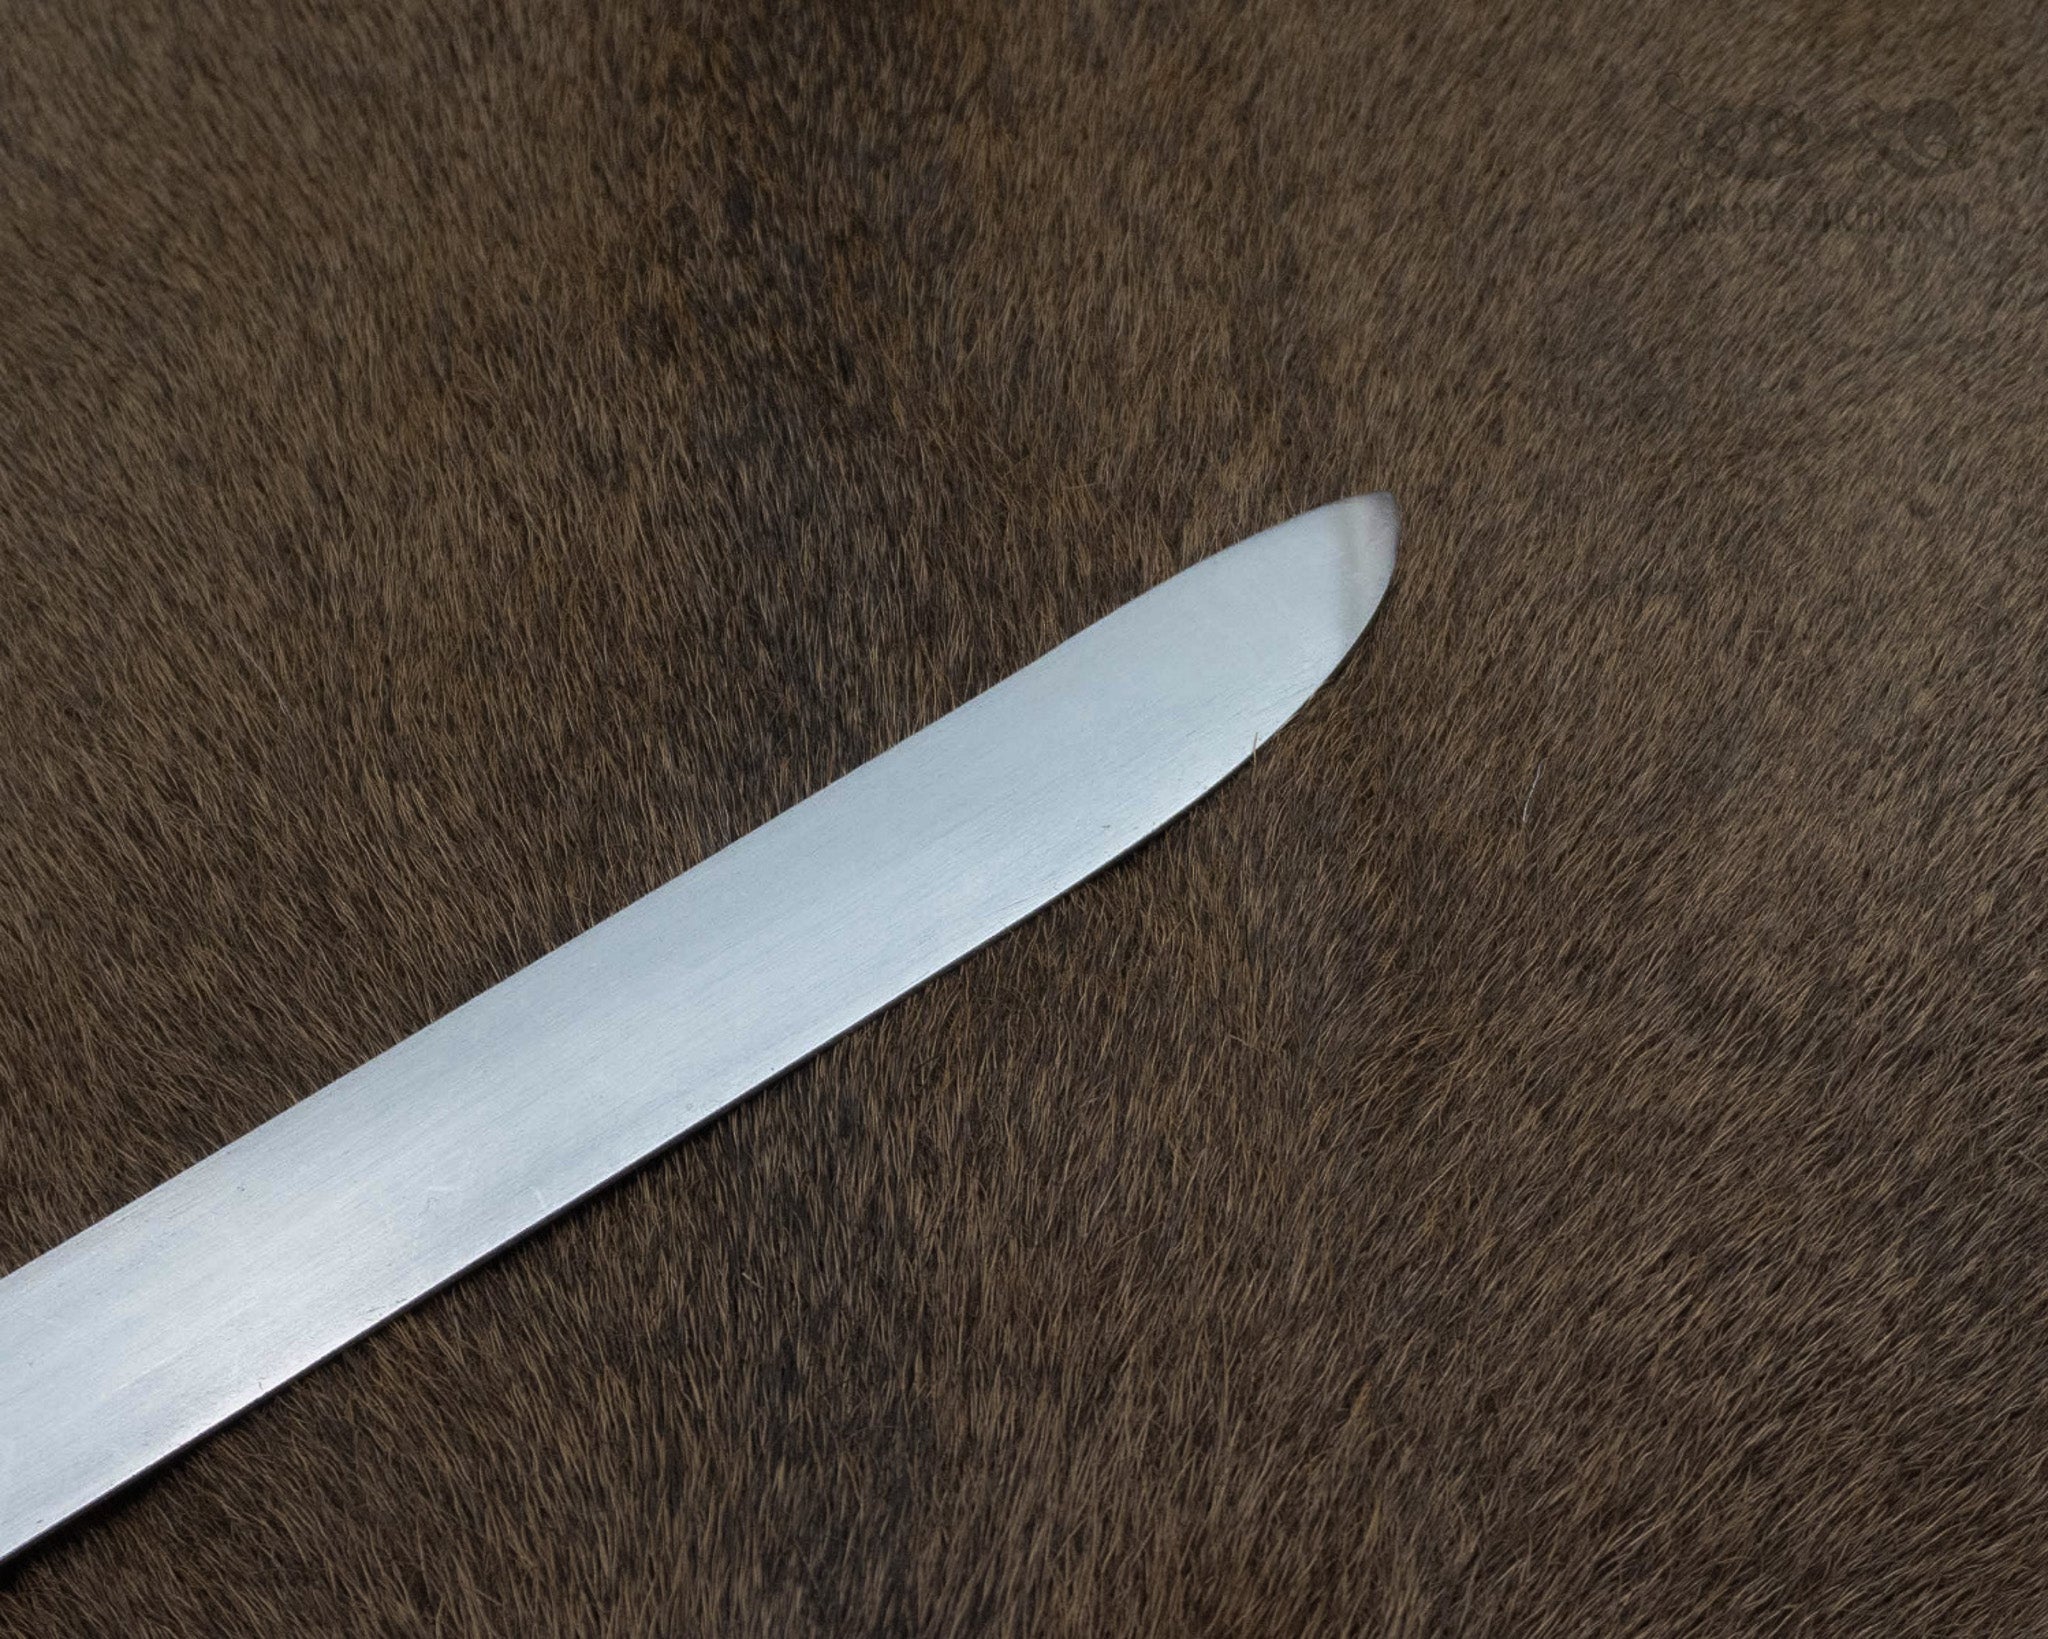 Viking scissors, Gotland. Semi sharp